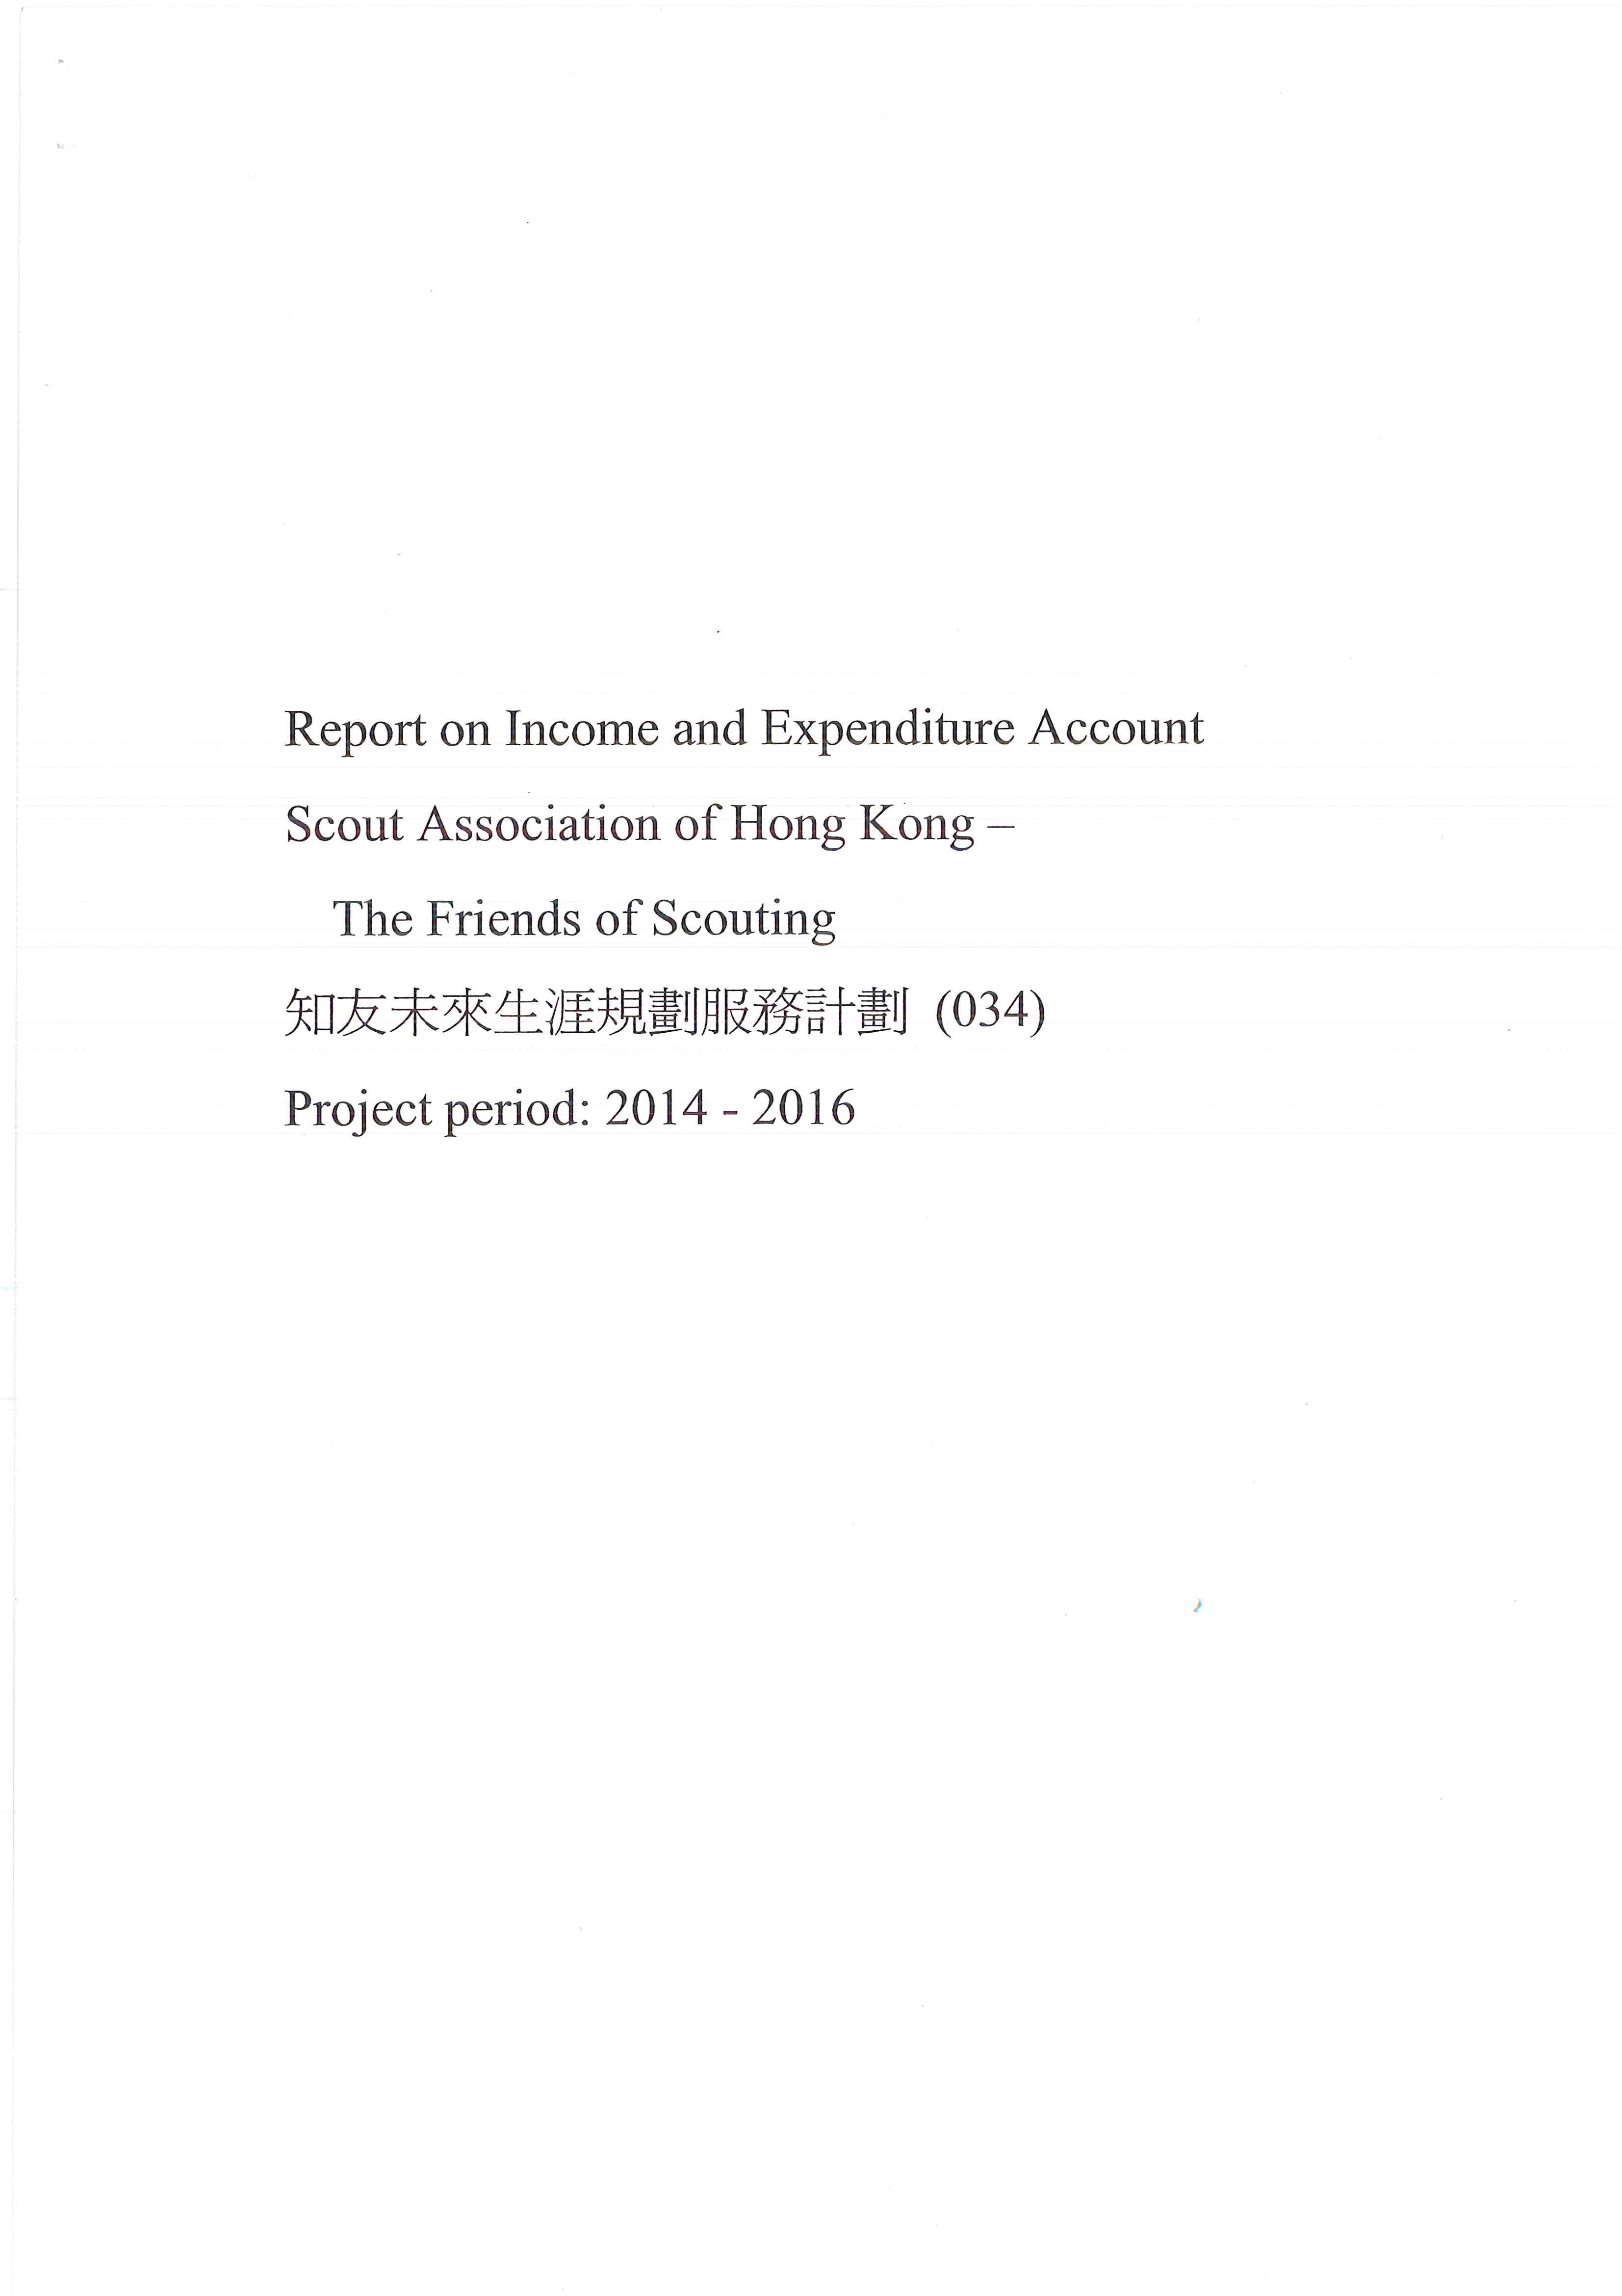 收支報告(2014-2016)